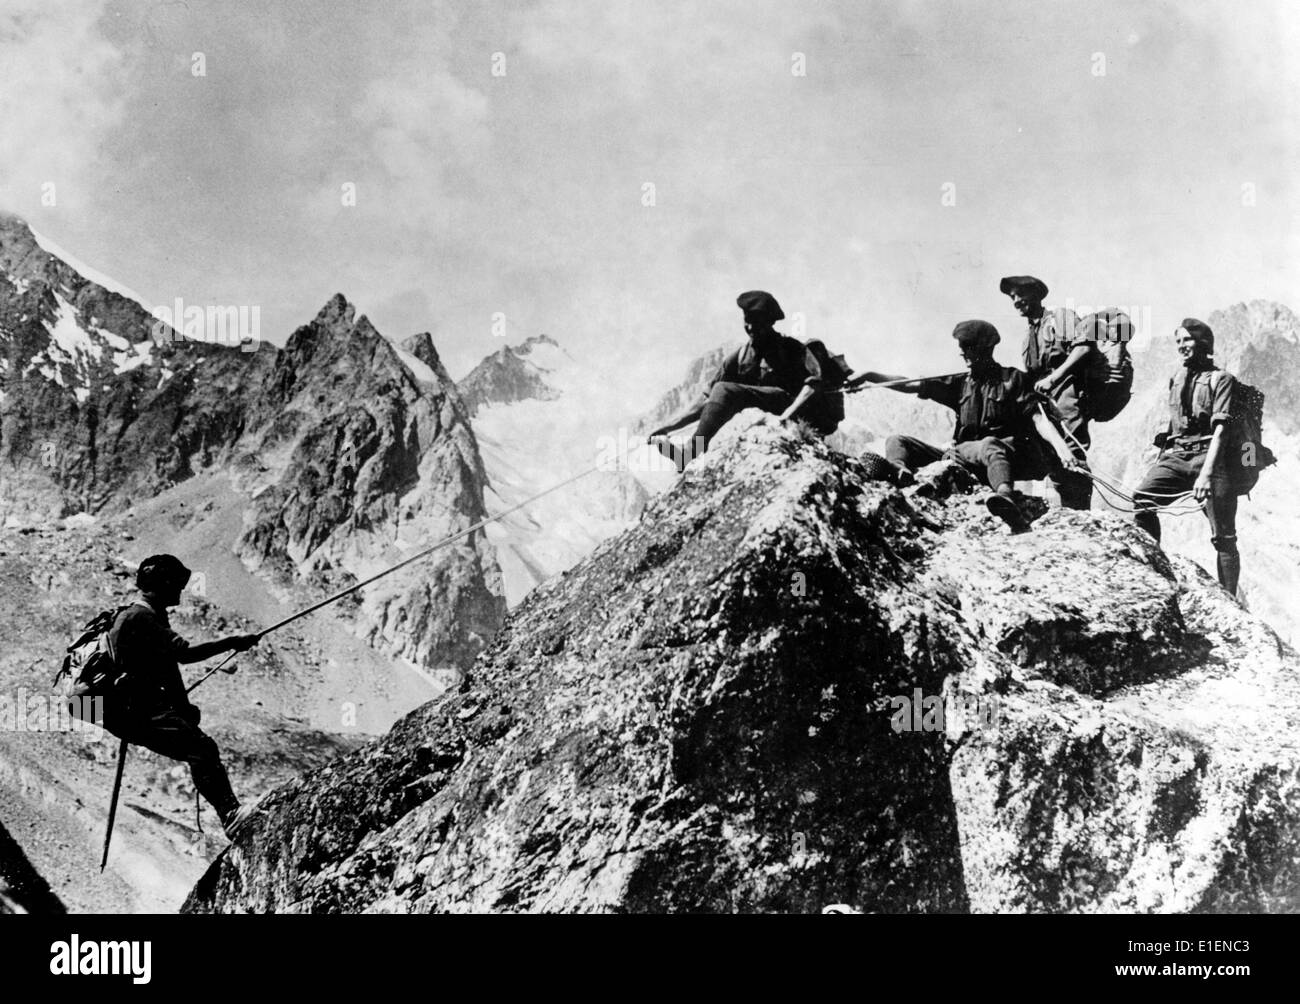 Le tableau de la propagande nazie montre des chasseurs français alpin qui escaladent un pic au glacier d'Arsine dans les Alpes françaises en août 1938. Fotoarchiv für Zeitgeschichtee - PAS DE SERVICE DE FIL Banque D'Images